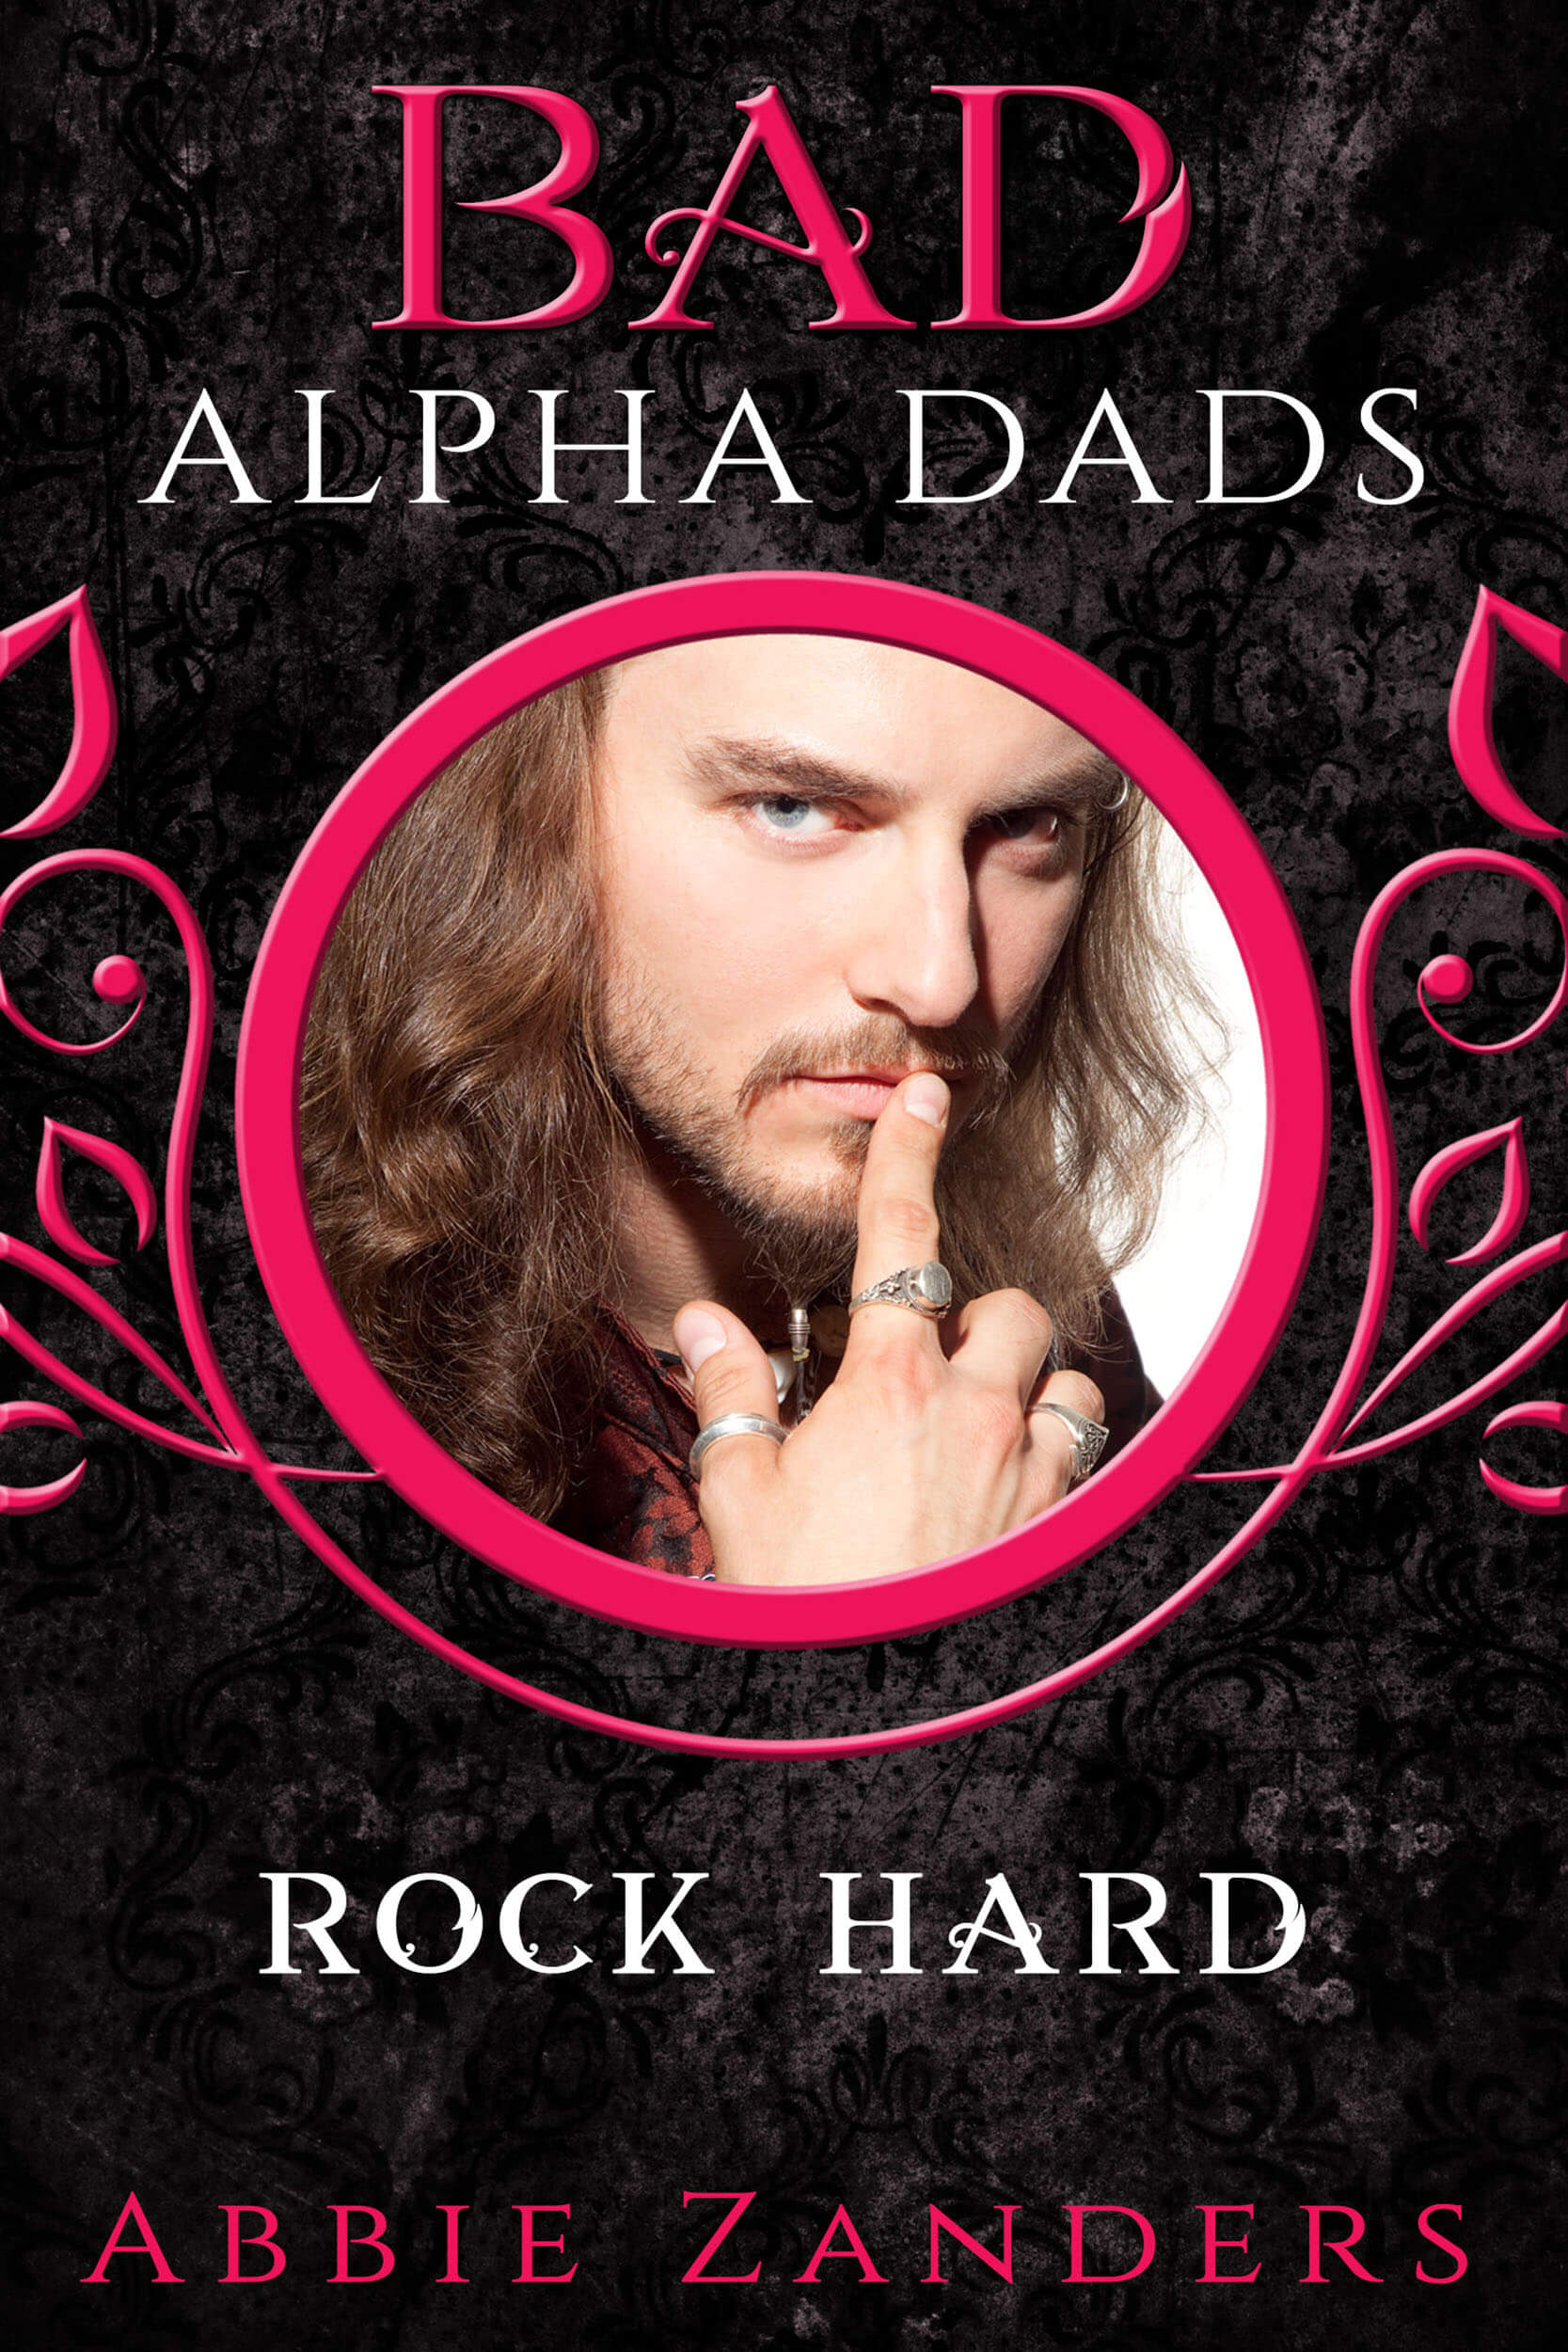 Bad Alpha Dads Rock Hard 1667×2500